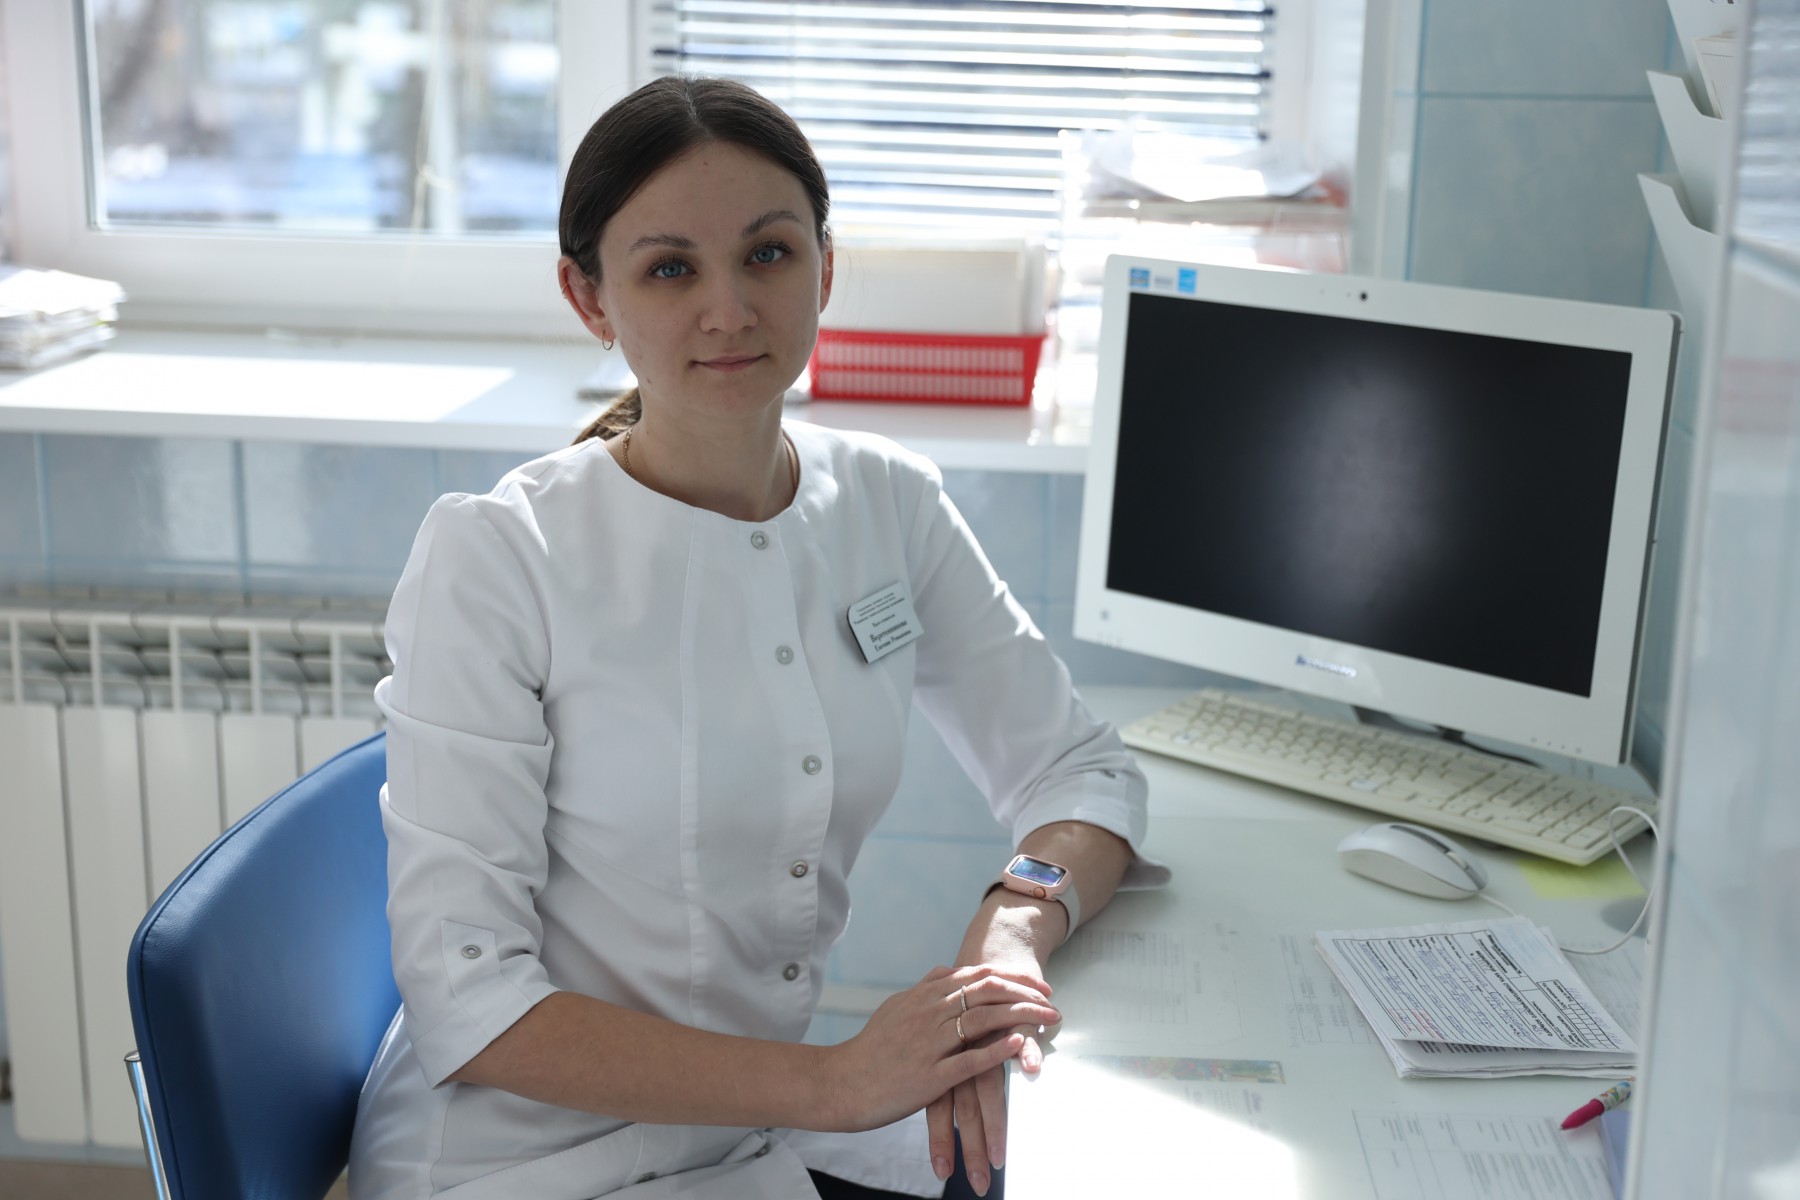 Евгения Веретенникова: «Я всегда хотела быть стоматологом». Фото Владимира Коцюбы-Белых